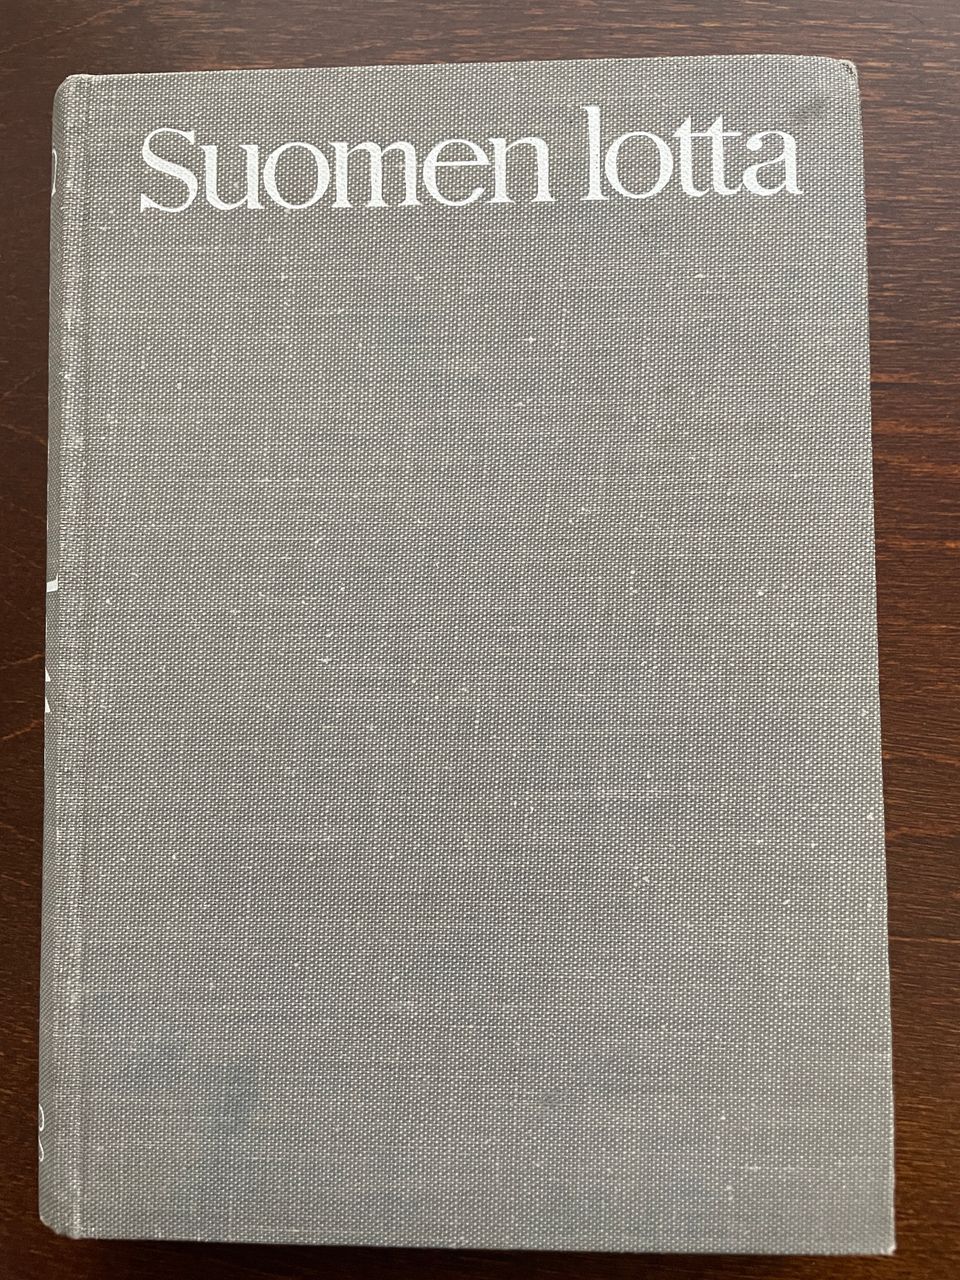 Suomen lotta kirja vuodelta 1964